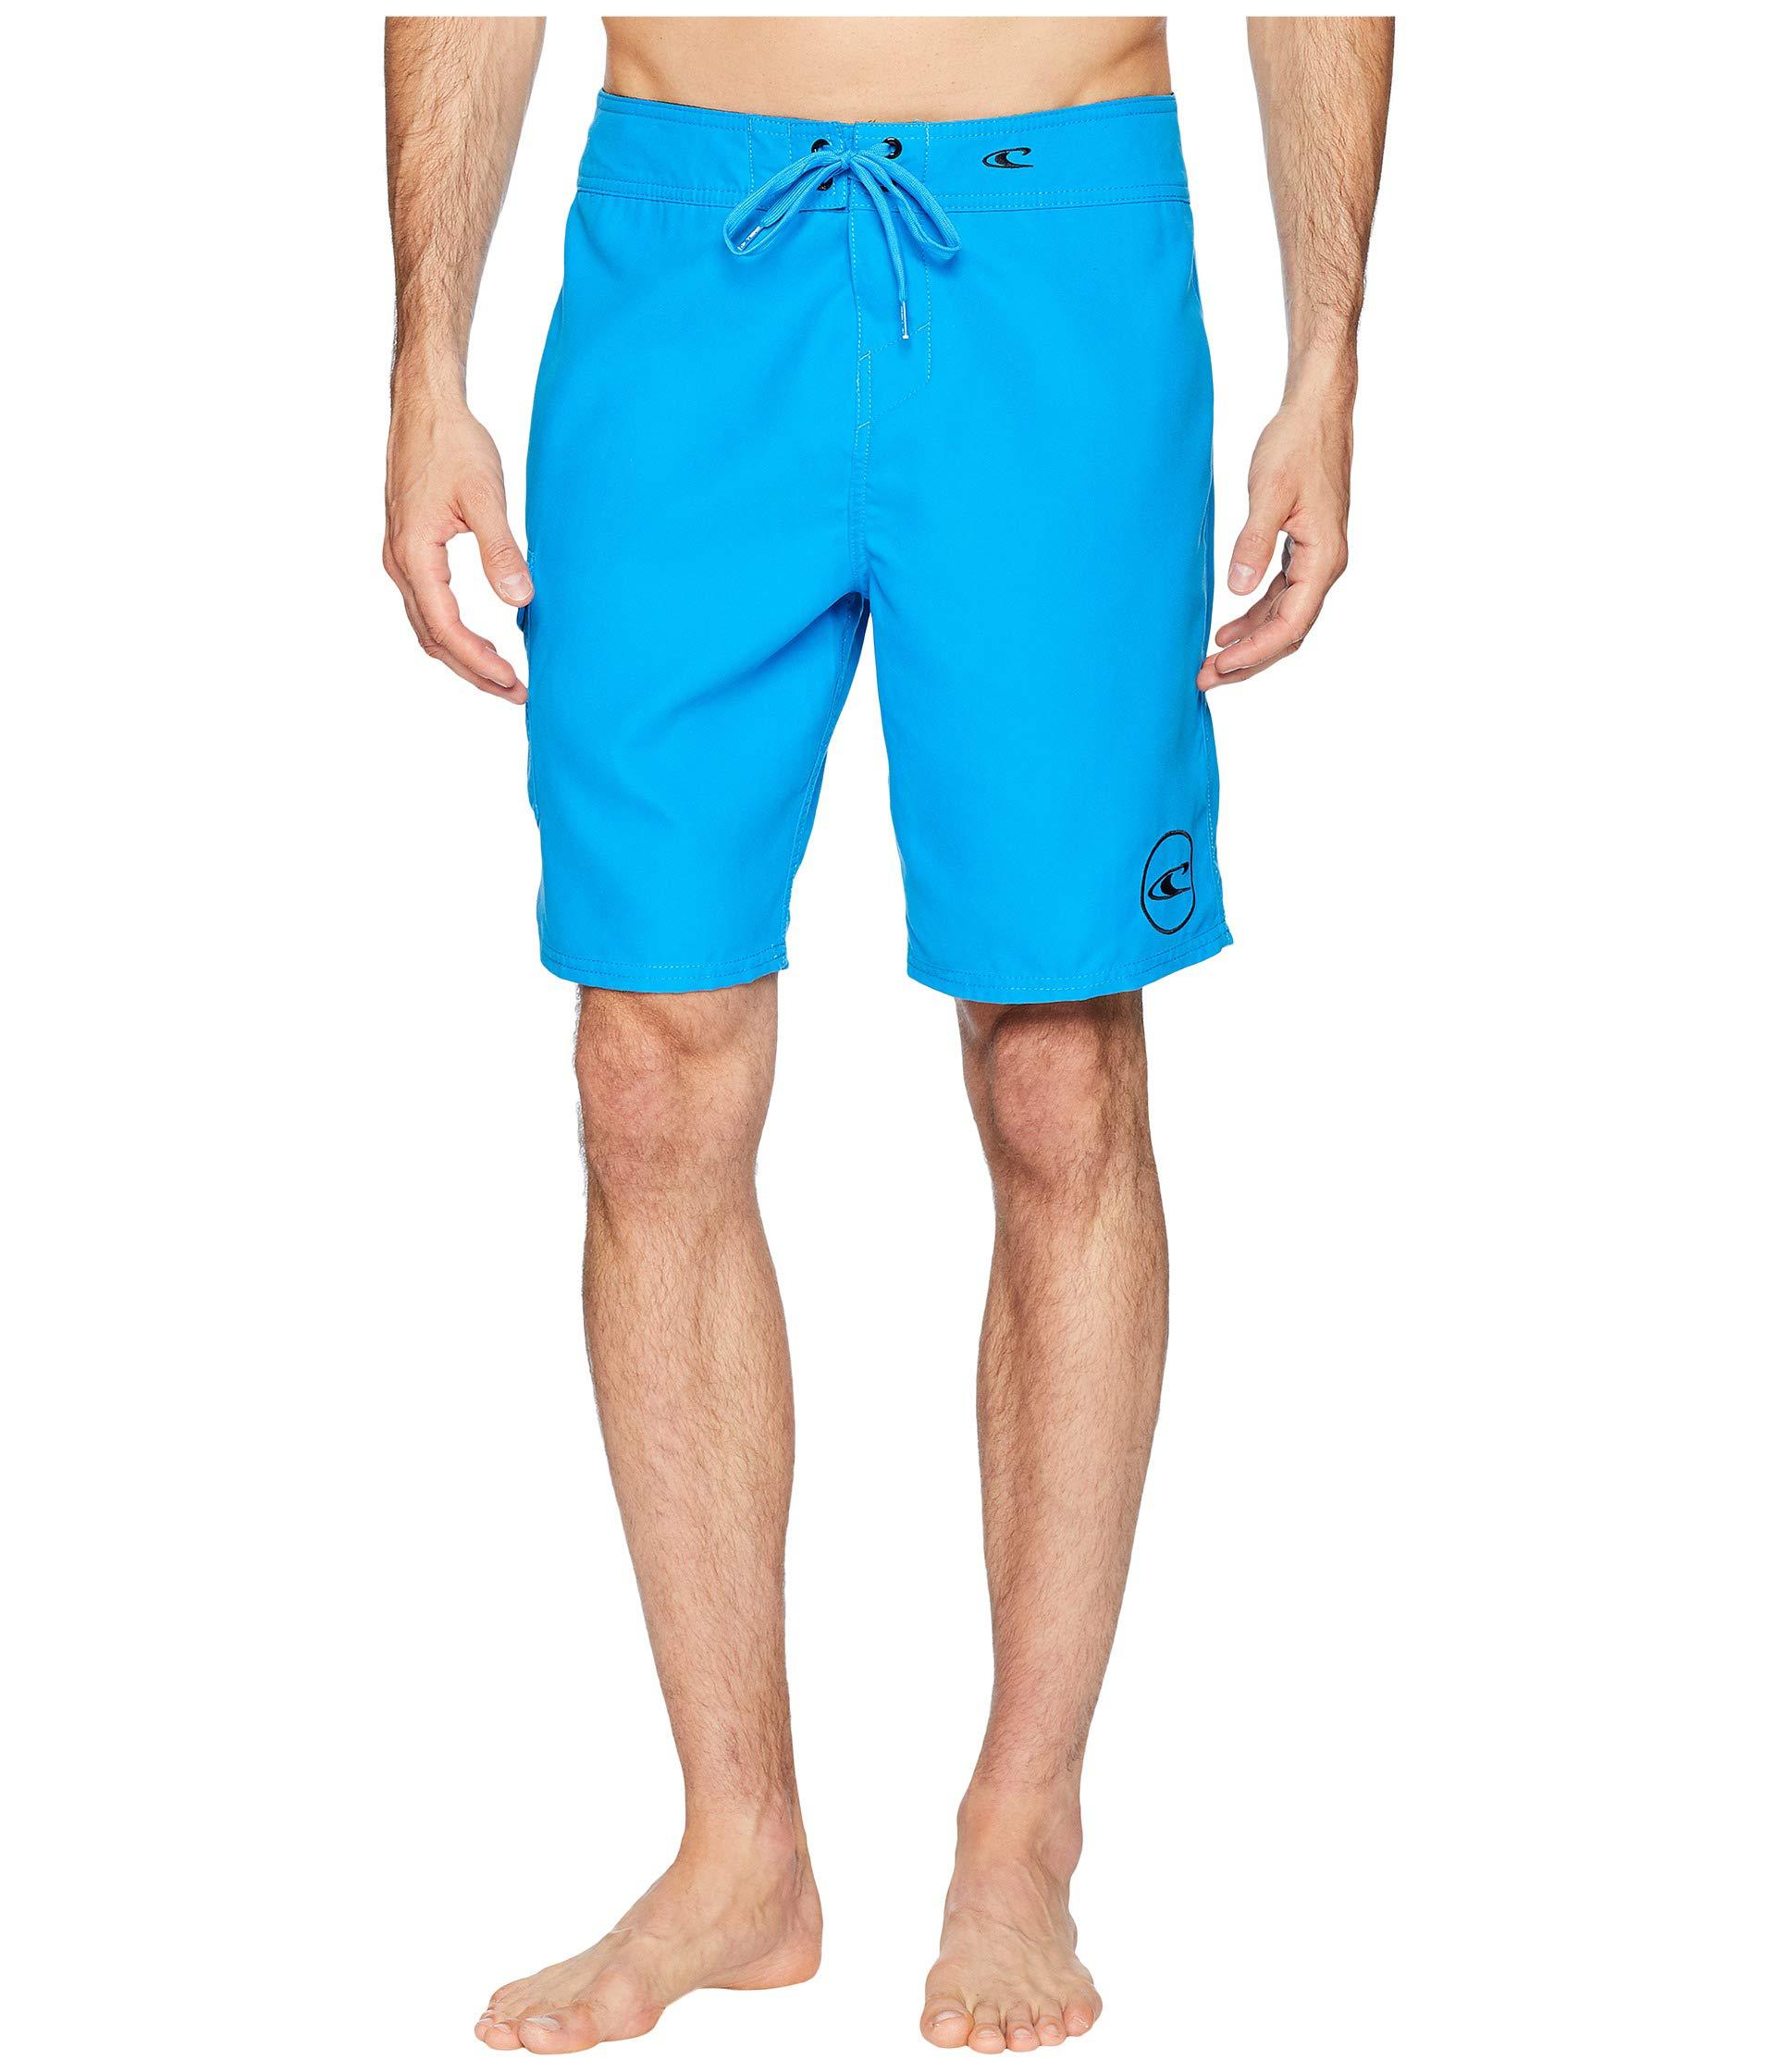 Lyst - O'neill Sportswear Santa Cruz Solid 2.0 19 Boardshorts (aqua ...